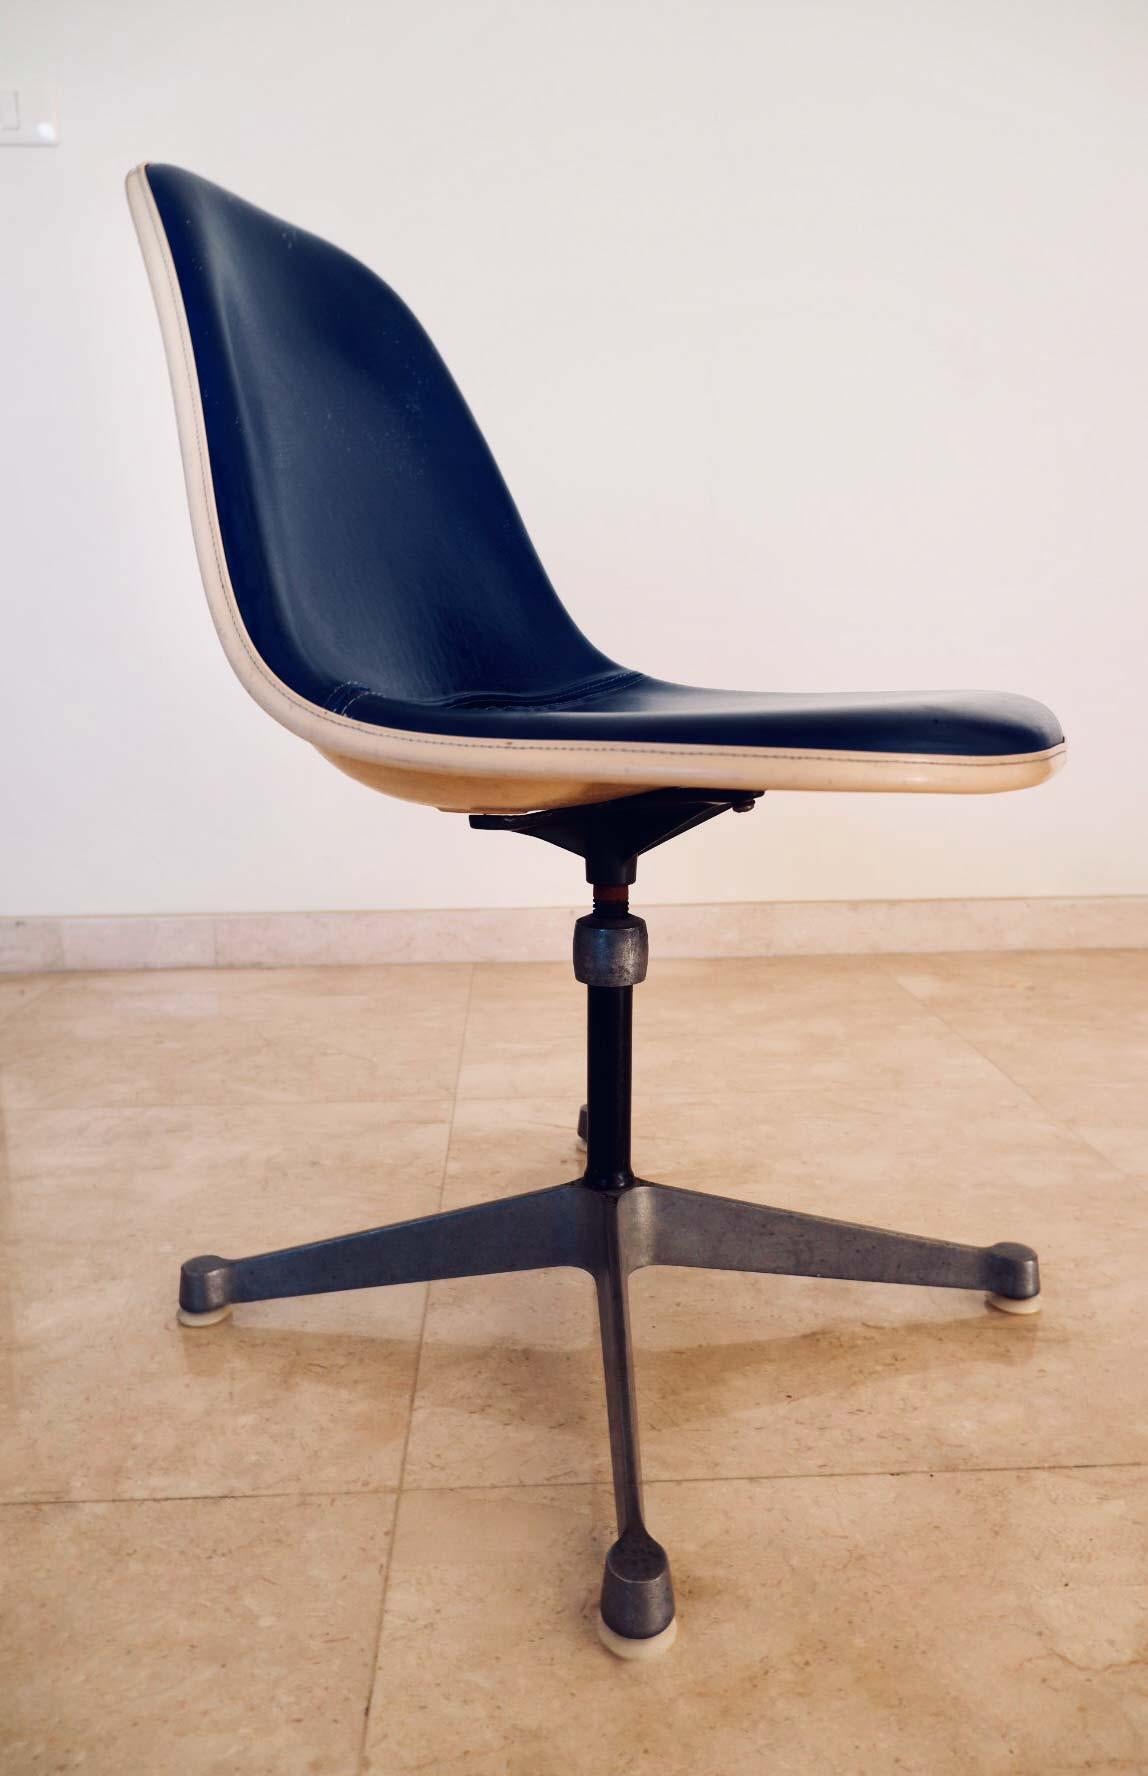 Une chaise de bureau vintage conçue par Charles et Ray Eames pour Herman Miller. La coque en fibre de verre est excellente et ne présente aucune fissure. Base pivotante en aluminium poli, réglable en hauteur, très légère usure (petites taches de